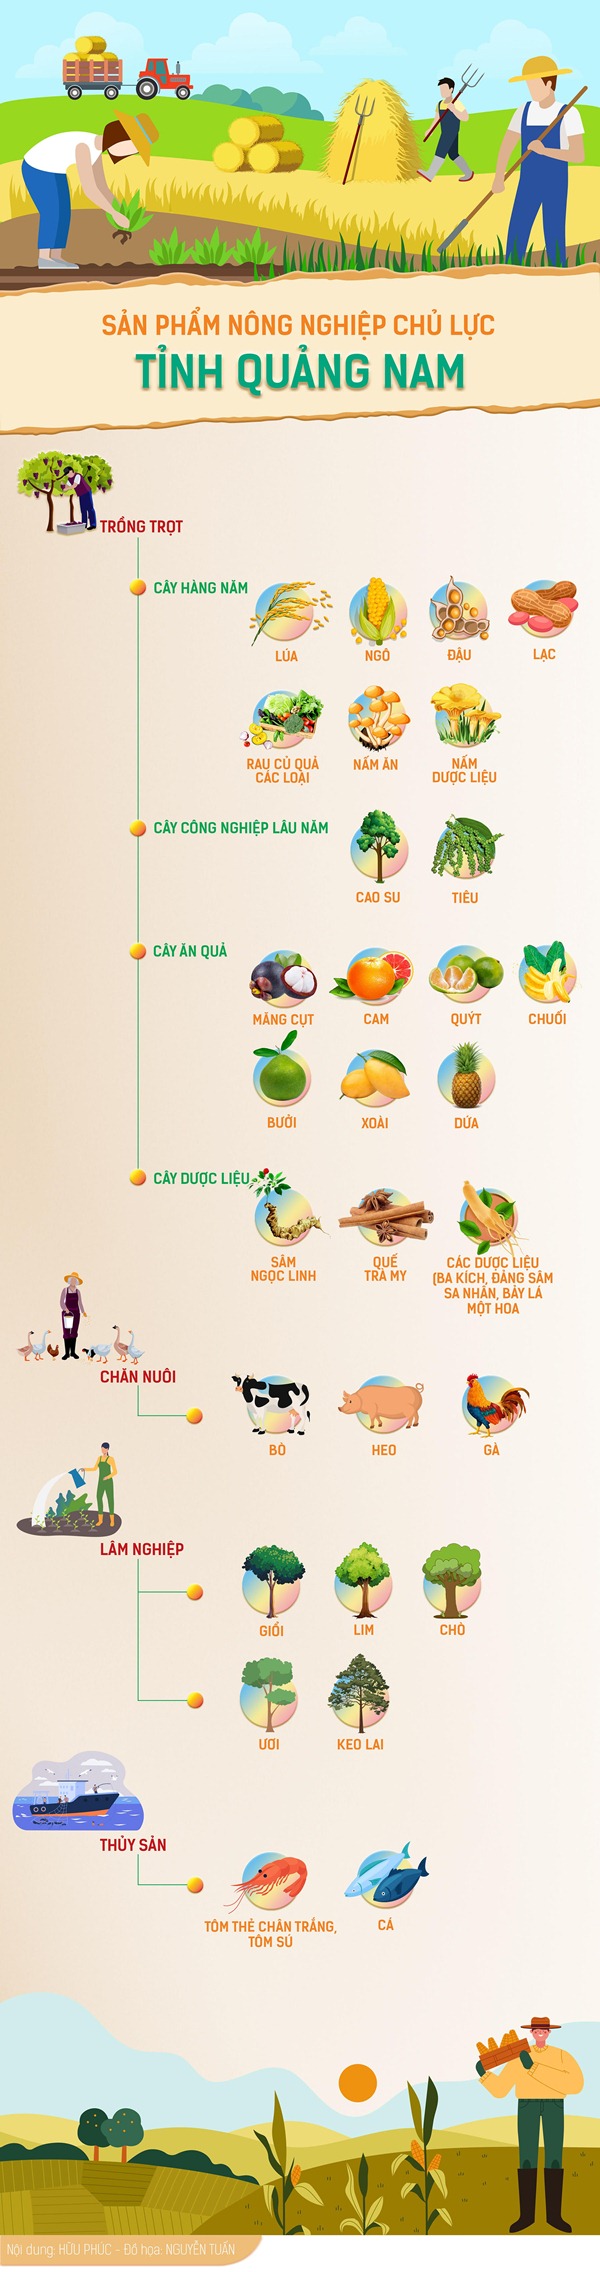 Infographic Sản phẩm nông nghiệp chủ lực tỉnh Quảng Nam